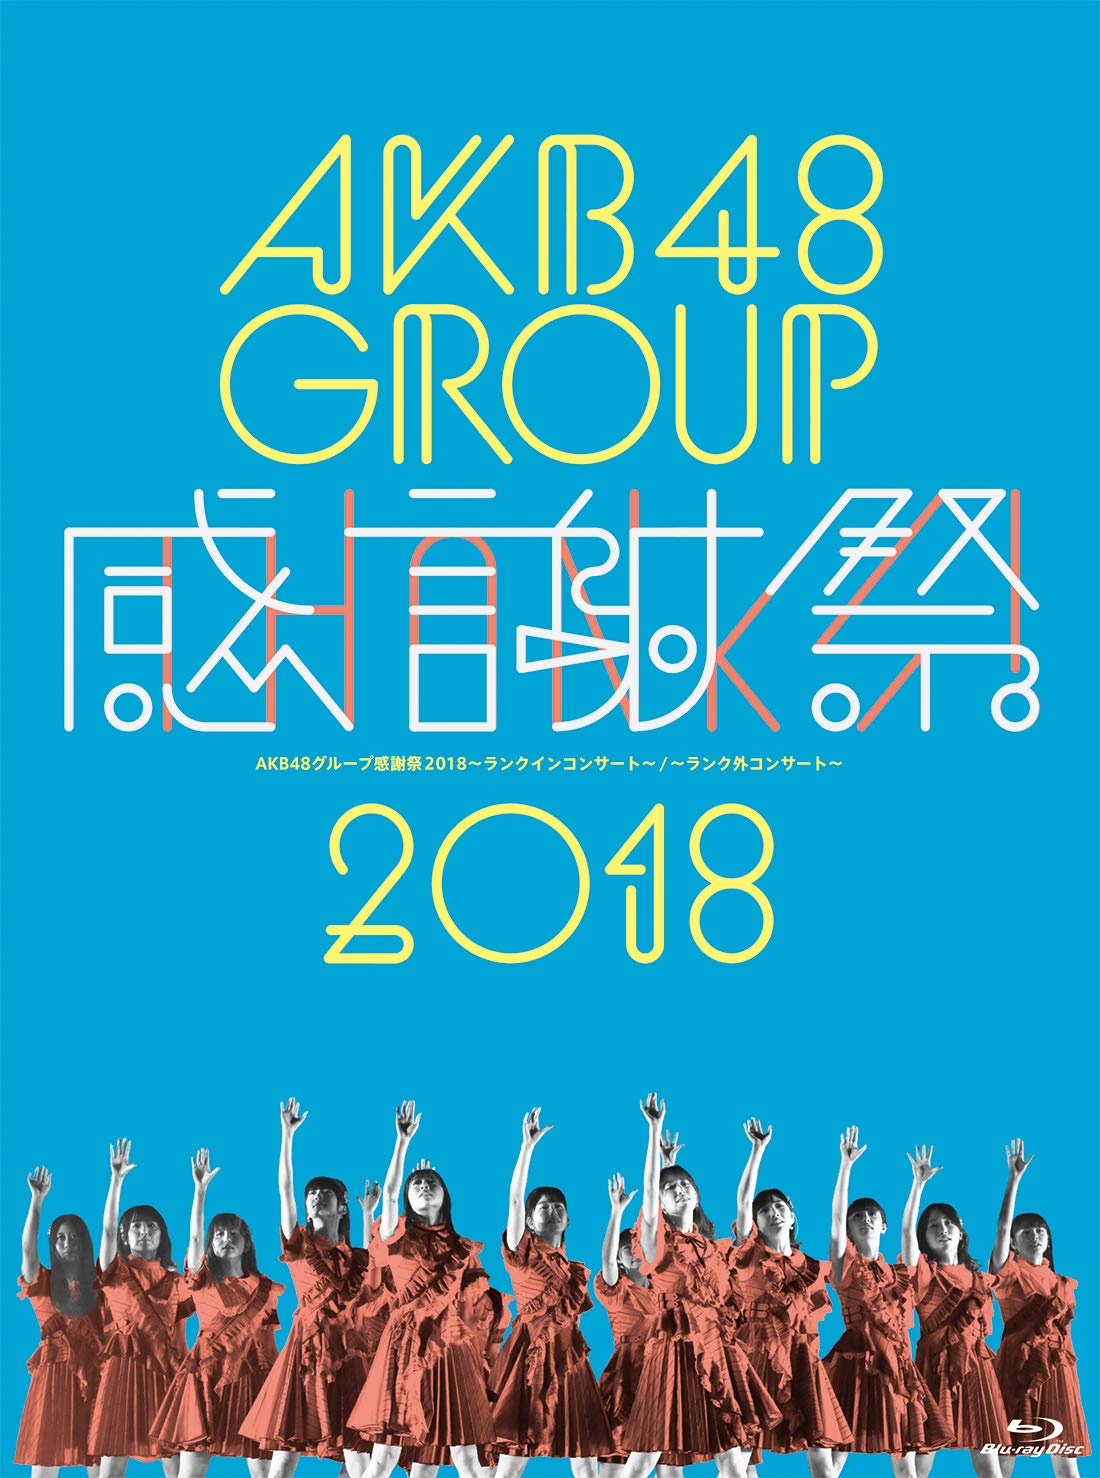 AKB48演唱会 AKB48 Group Kanshasai 2018 ~Rank-in Concert / Rank-gai Concert~